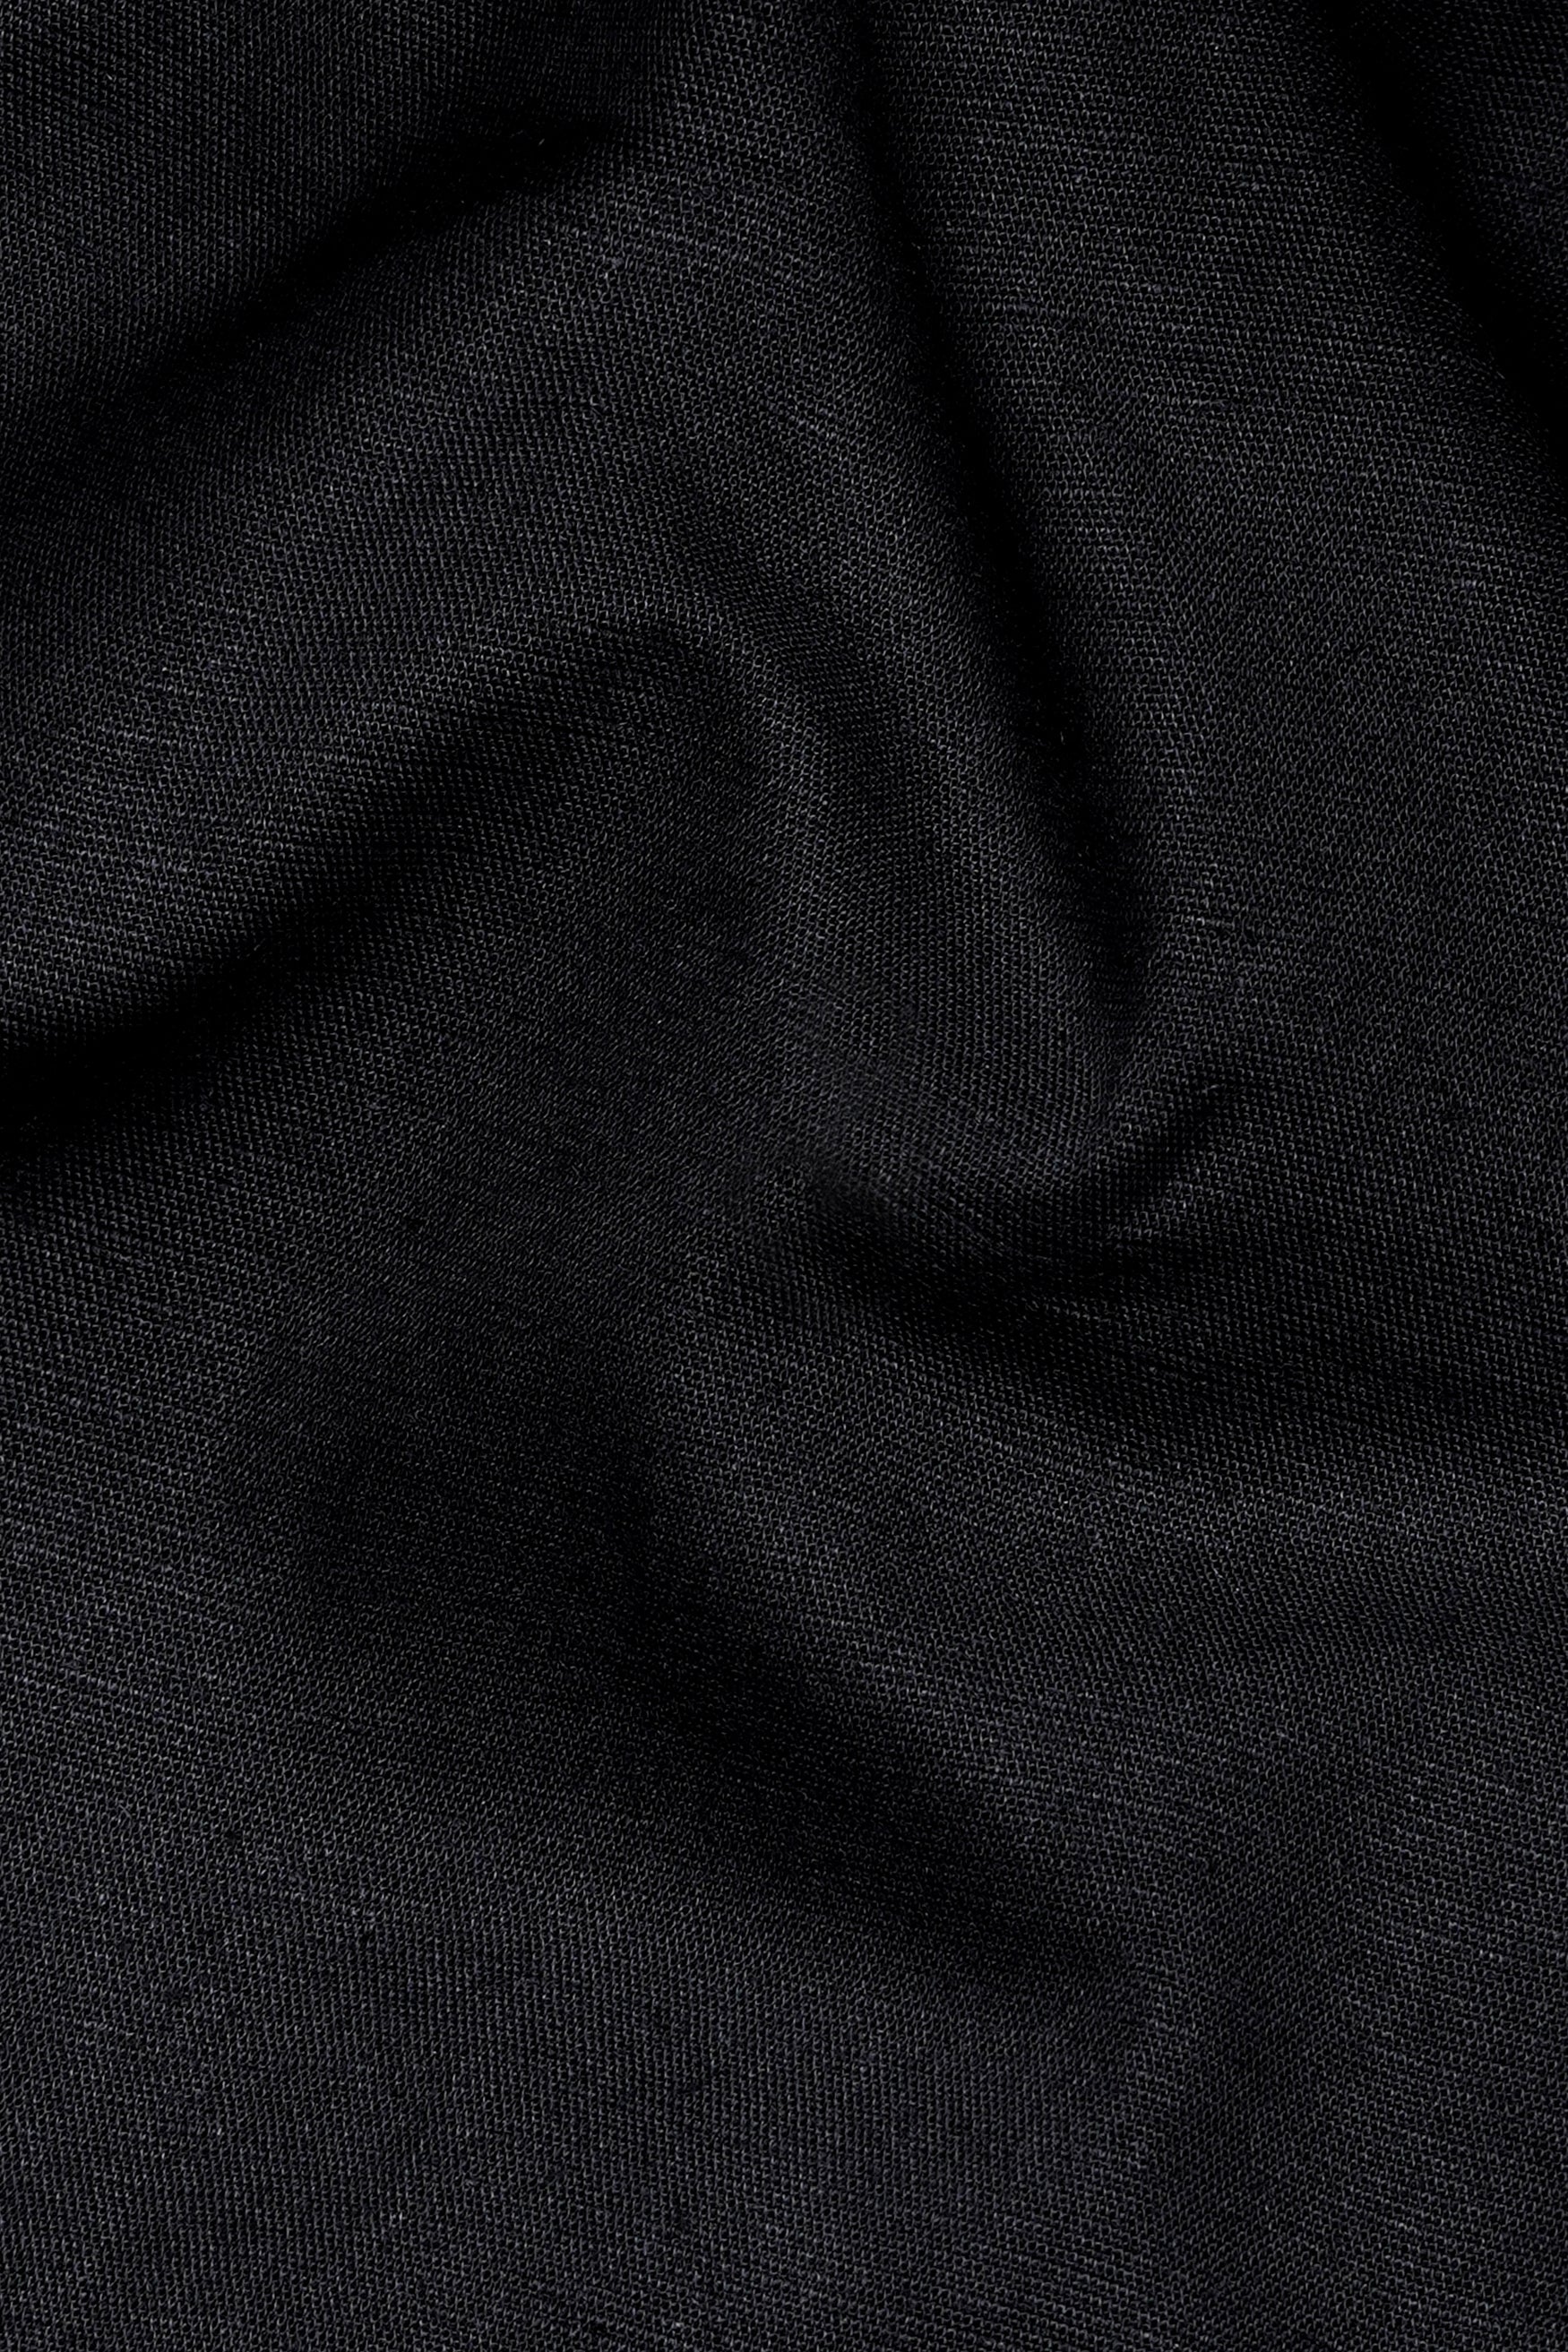 Jade Black Luxurious Linen Half Sleeved Shirt 11994-CC-SS-BLK-38, 11994-CC-SS-BLK-39, 11994-CC-SS-BLK-40, 11994-CC-SS-BLK-42, 11994-CC-SS-BLK-44, 11994-CC-SS-BLK-46, 11994-CC-SS-BLK-48, 11994-CC-SS-BLK-50, 11994-CC-SS-BLK-52 